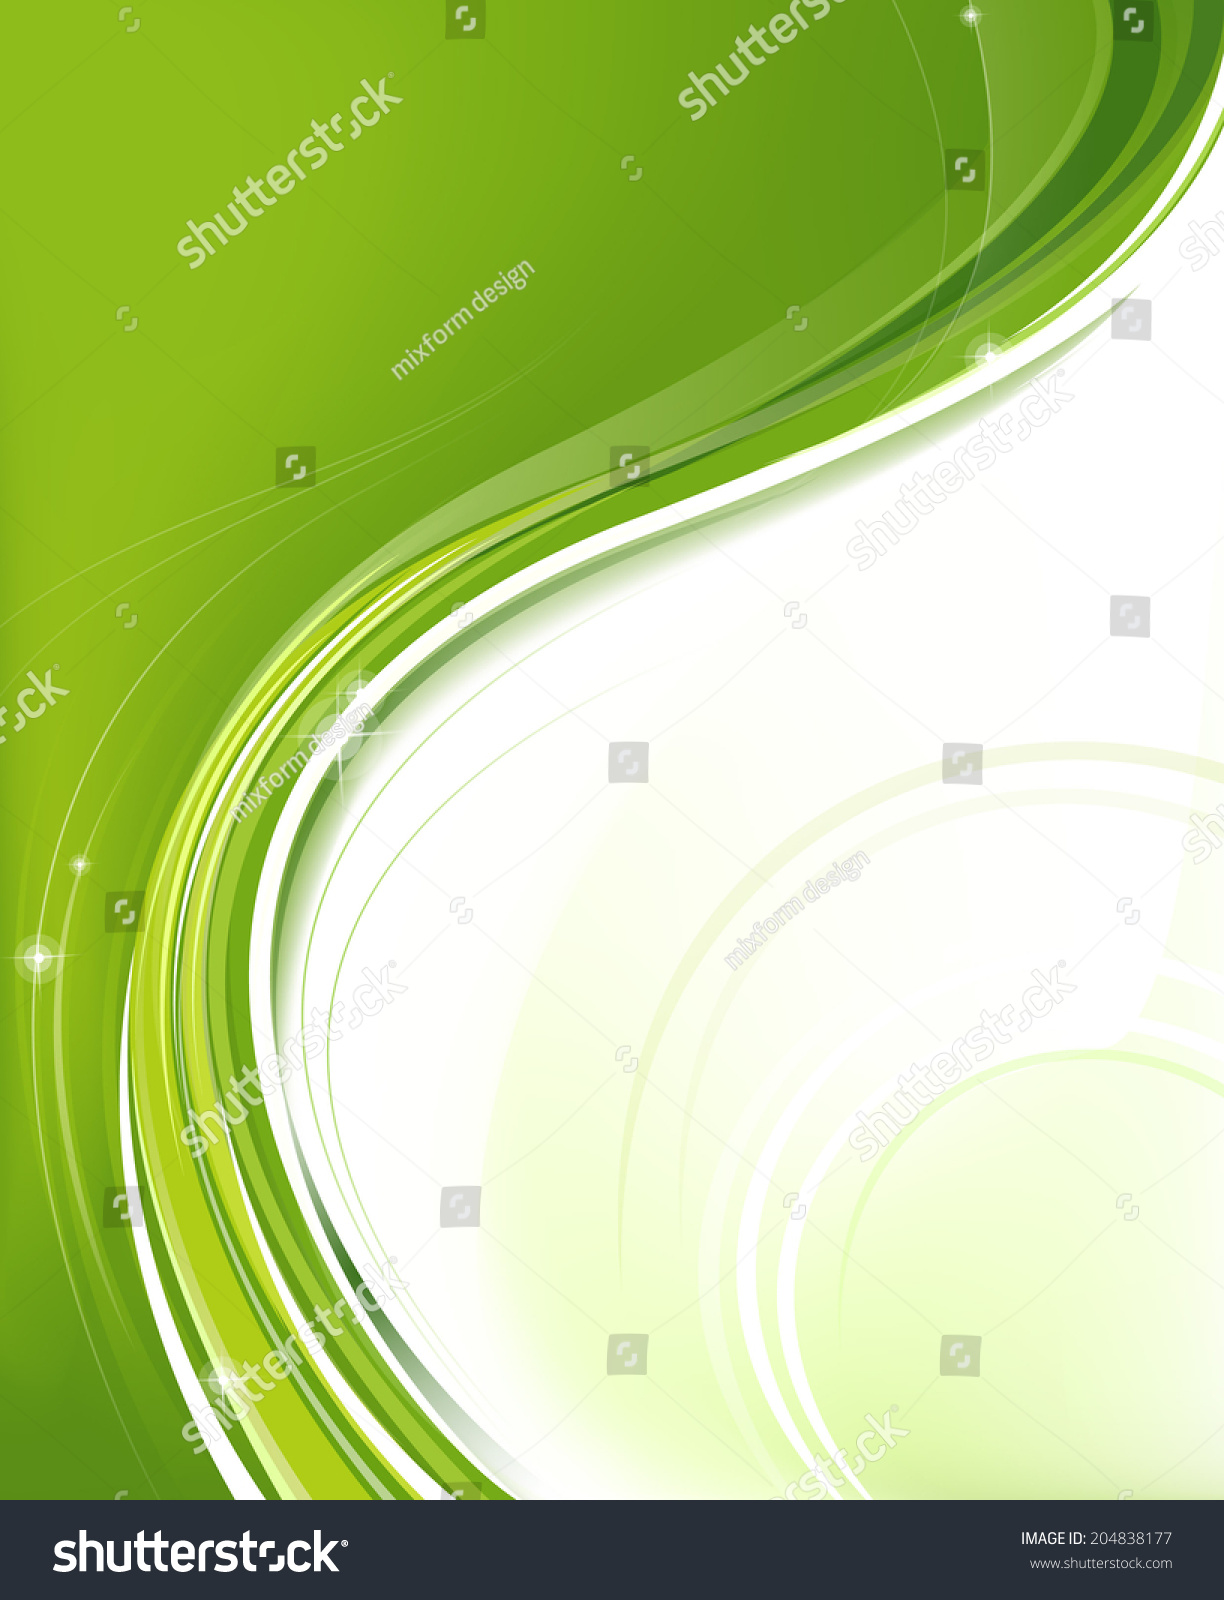 Green Momentum Stock Illustration 204838177 - Shutterstock